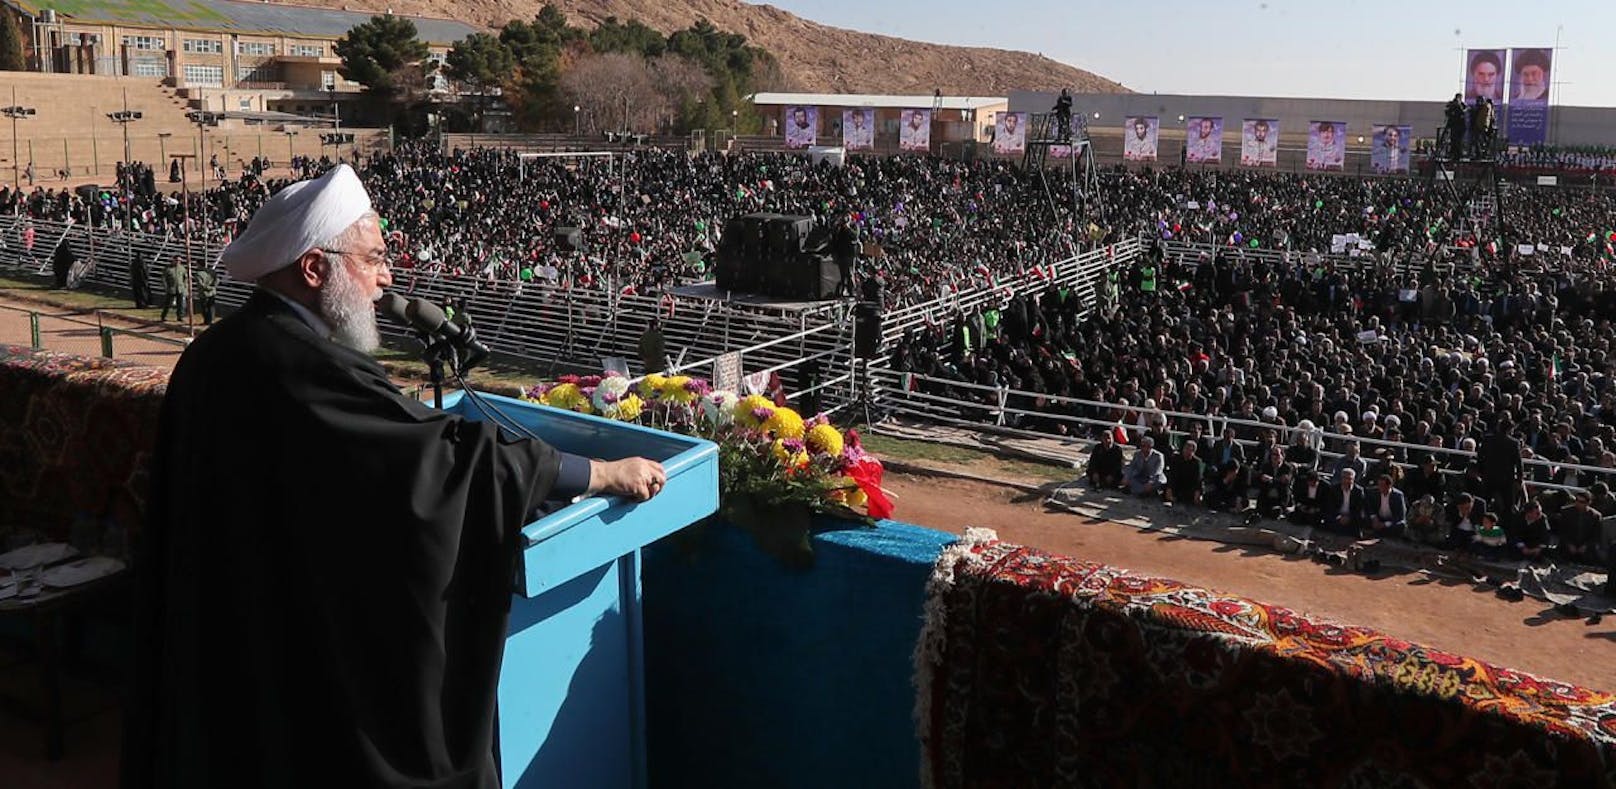 Irans Präsident Hassan Rouhani sprach die Drohung am Dienstag bei einer Rede in Shahroud aus.